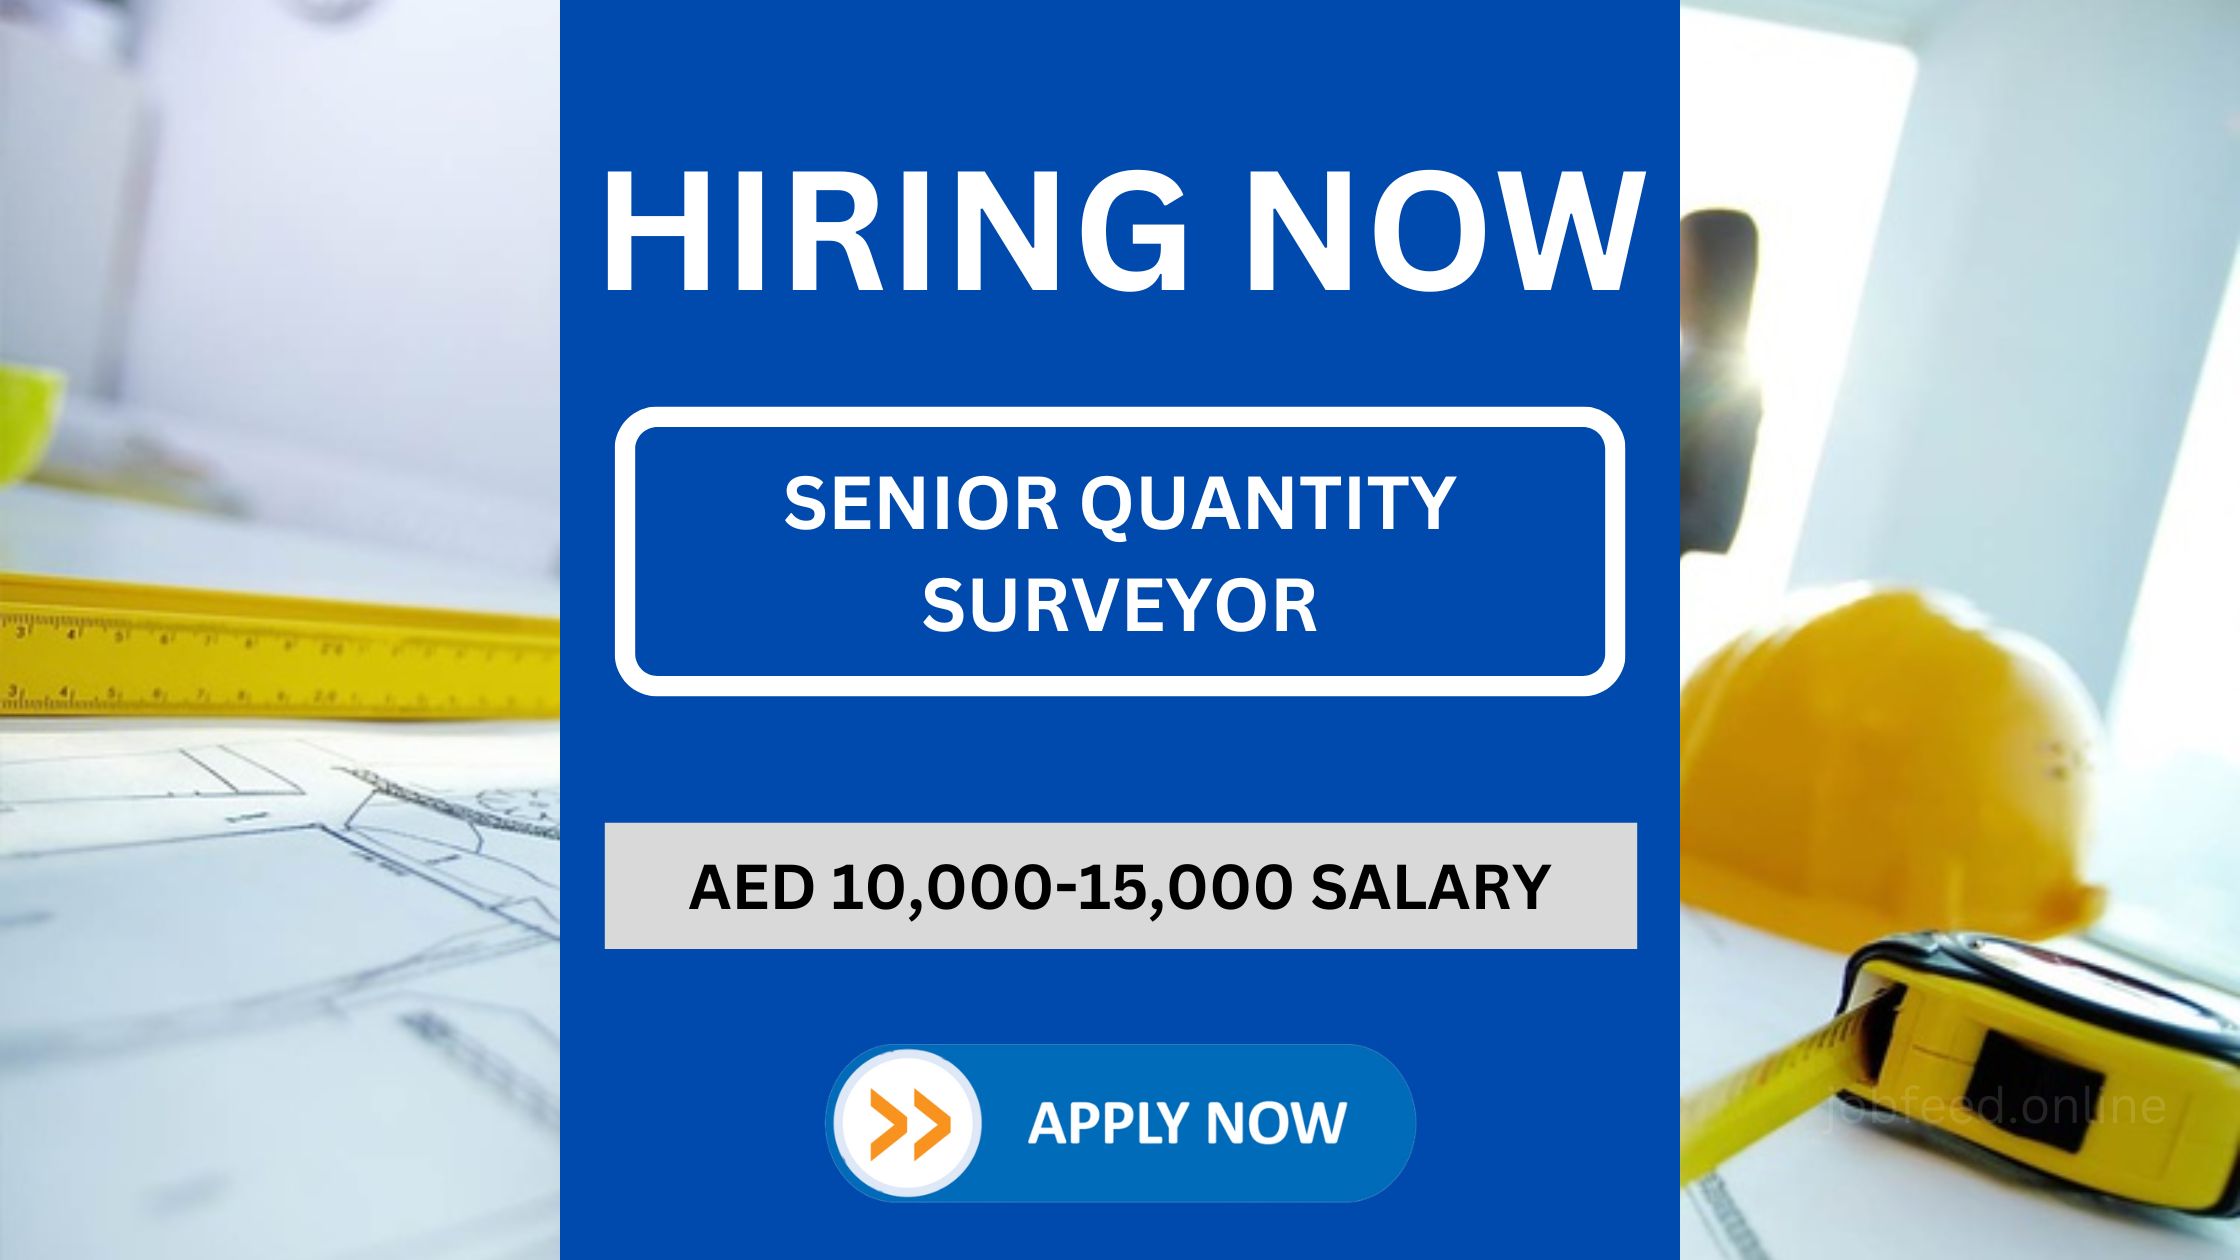 Senior Quantity Surveyor Position - Salary: 10,000-15,000 Dirhams